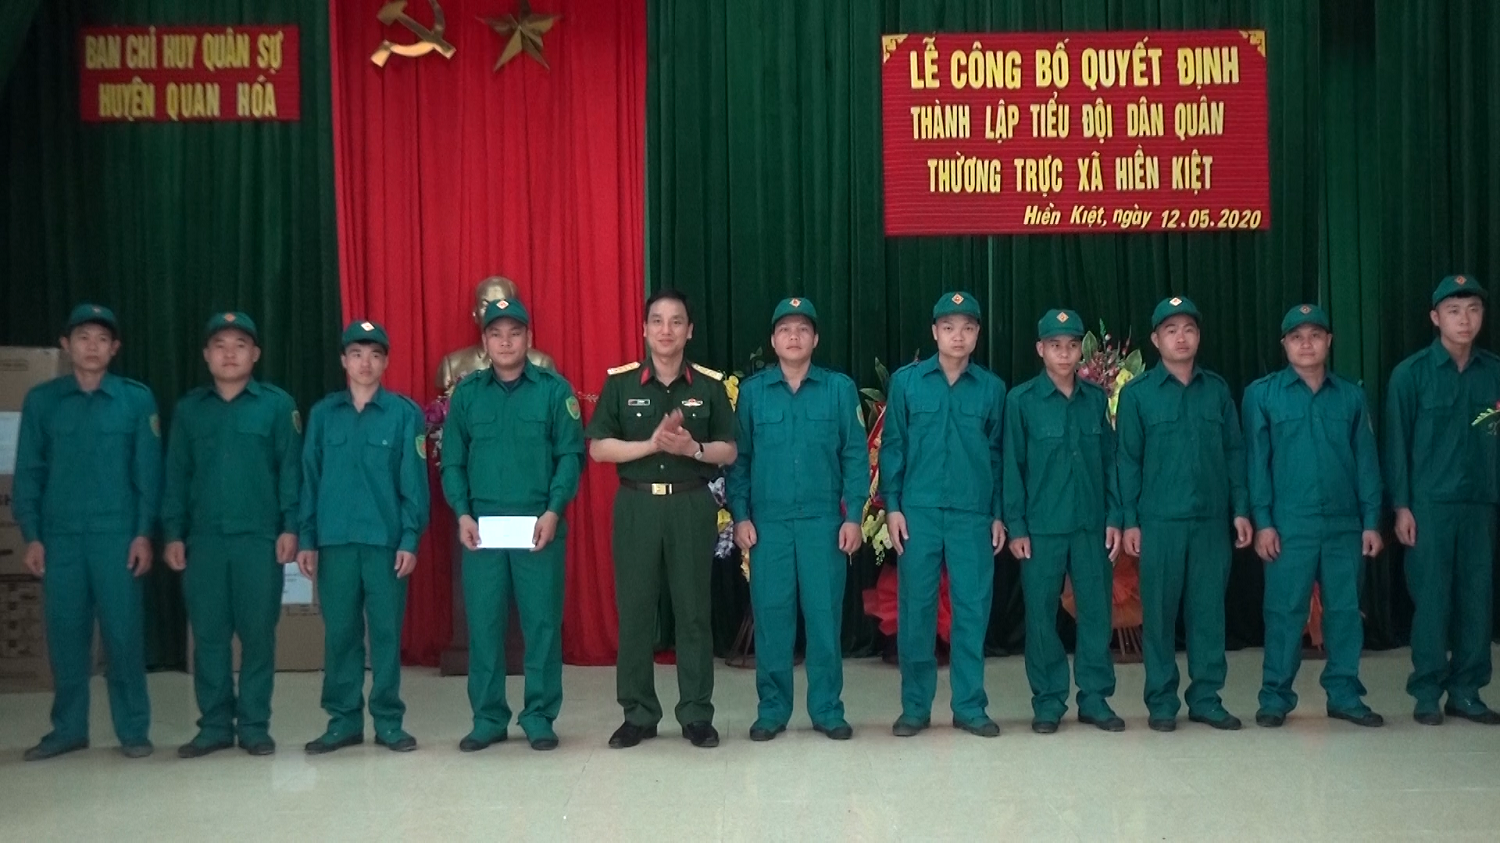 Thành lập Tiểu đội dân quân thường trực xã Hiền Kiệt, Quan Hóa, Thanh Hóa